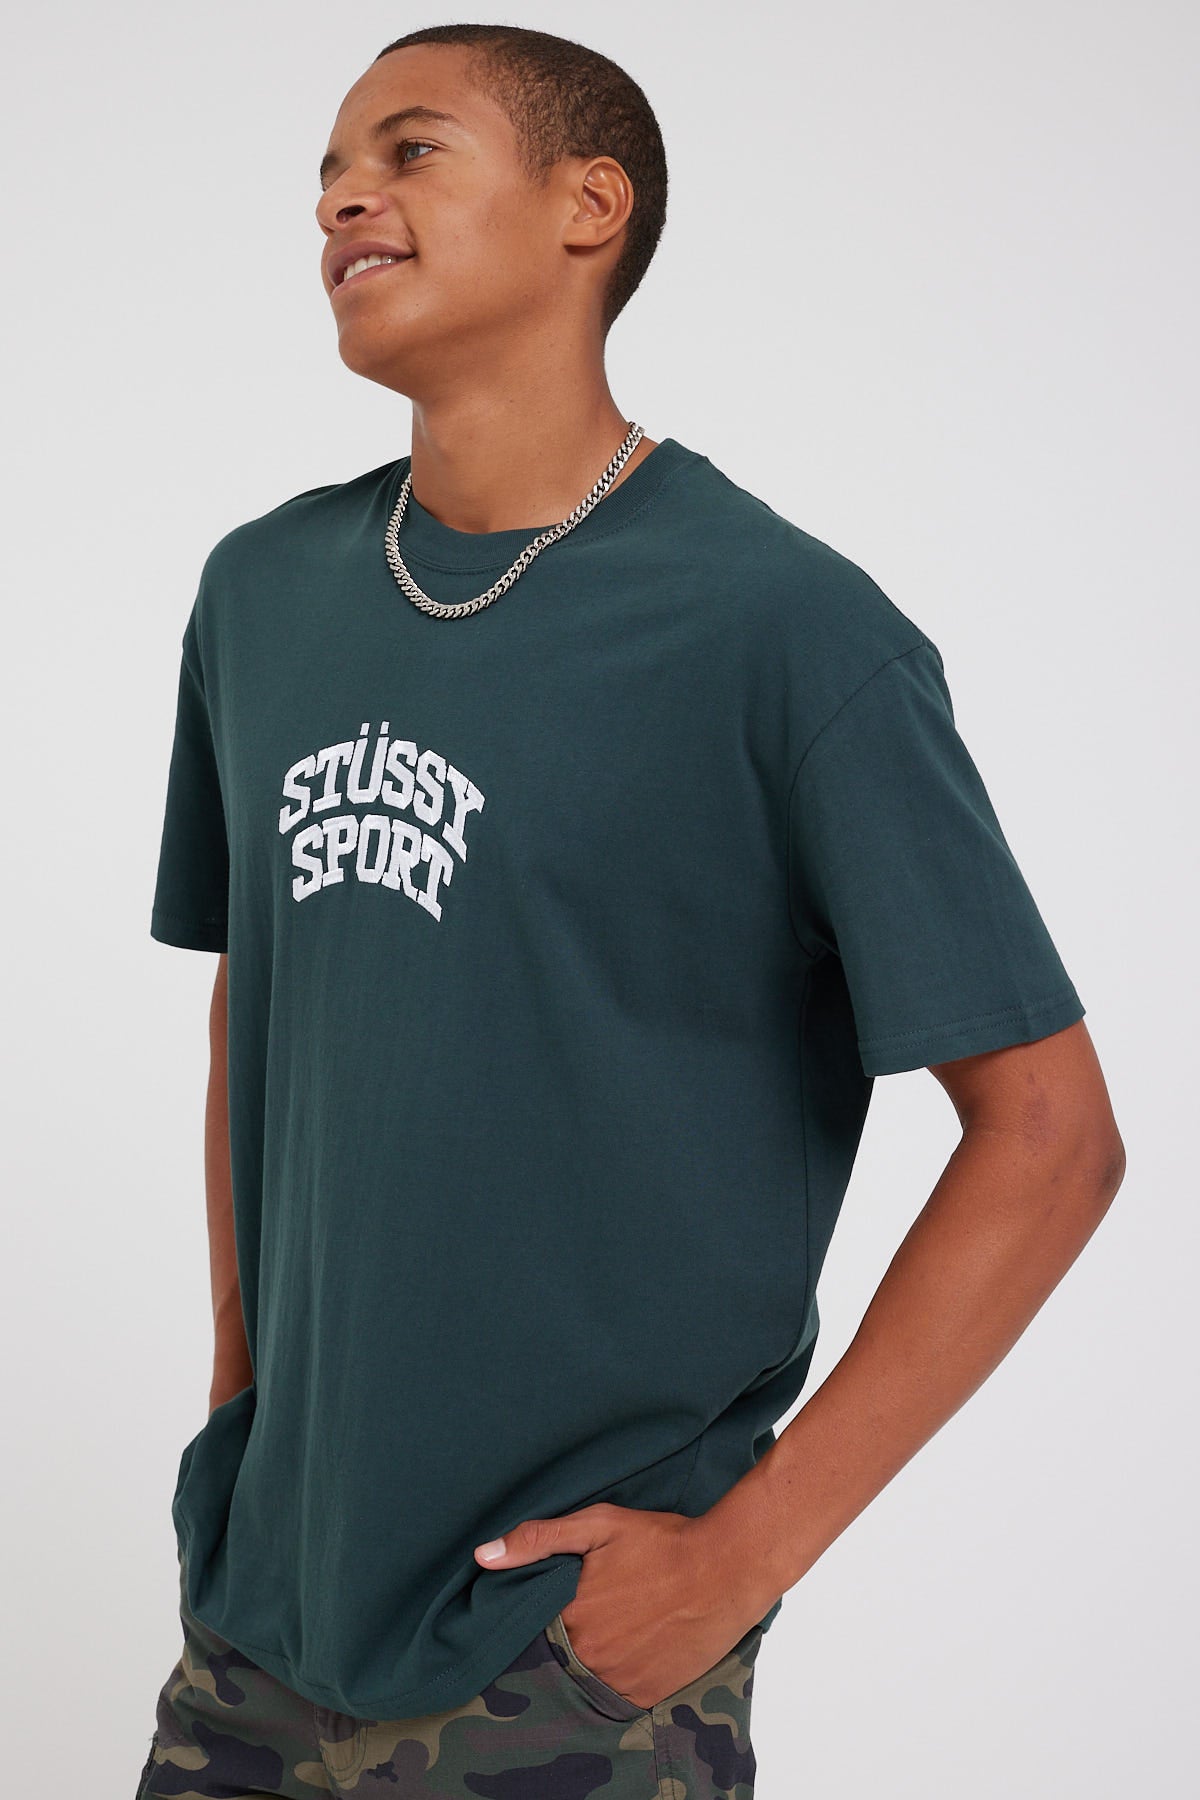 Stussy Stussy Sport 50/50 SS Tee Dark Green